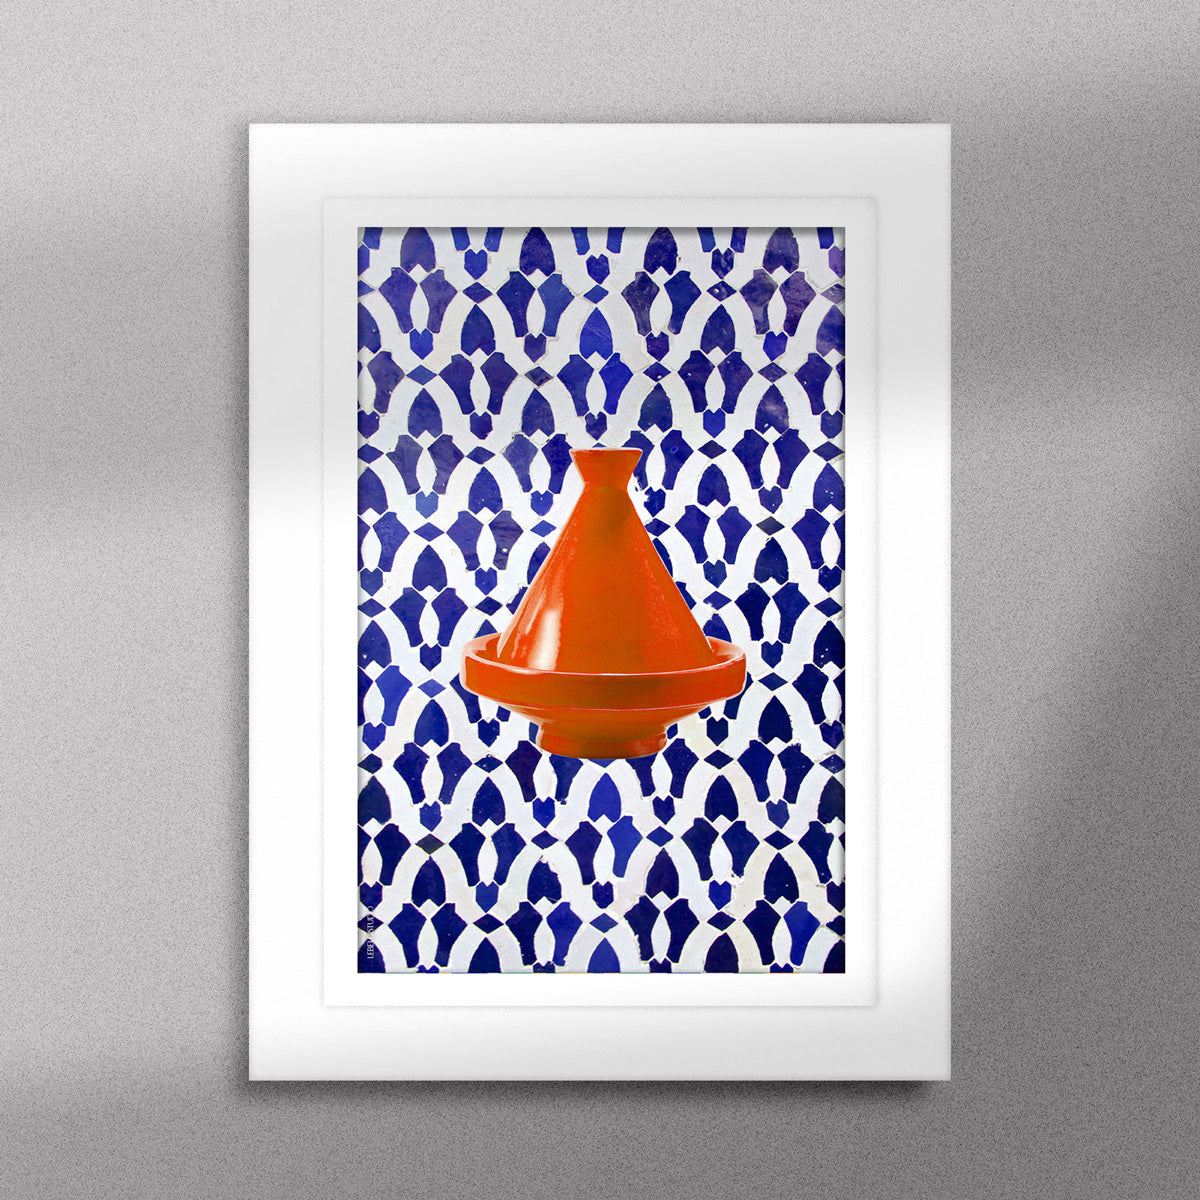 Tableau décoratif d'un tagine marocain en orange, sur un fond de zellige marocain de motifs en bleu, encadré dans un cadre en blanc - Format A5.